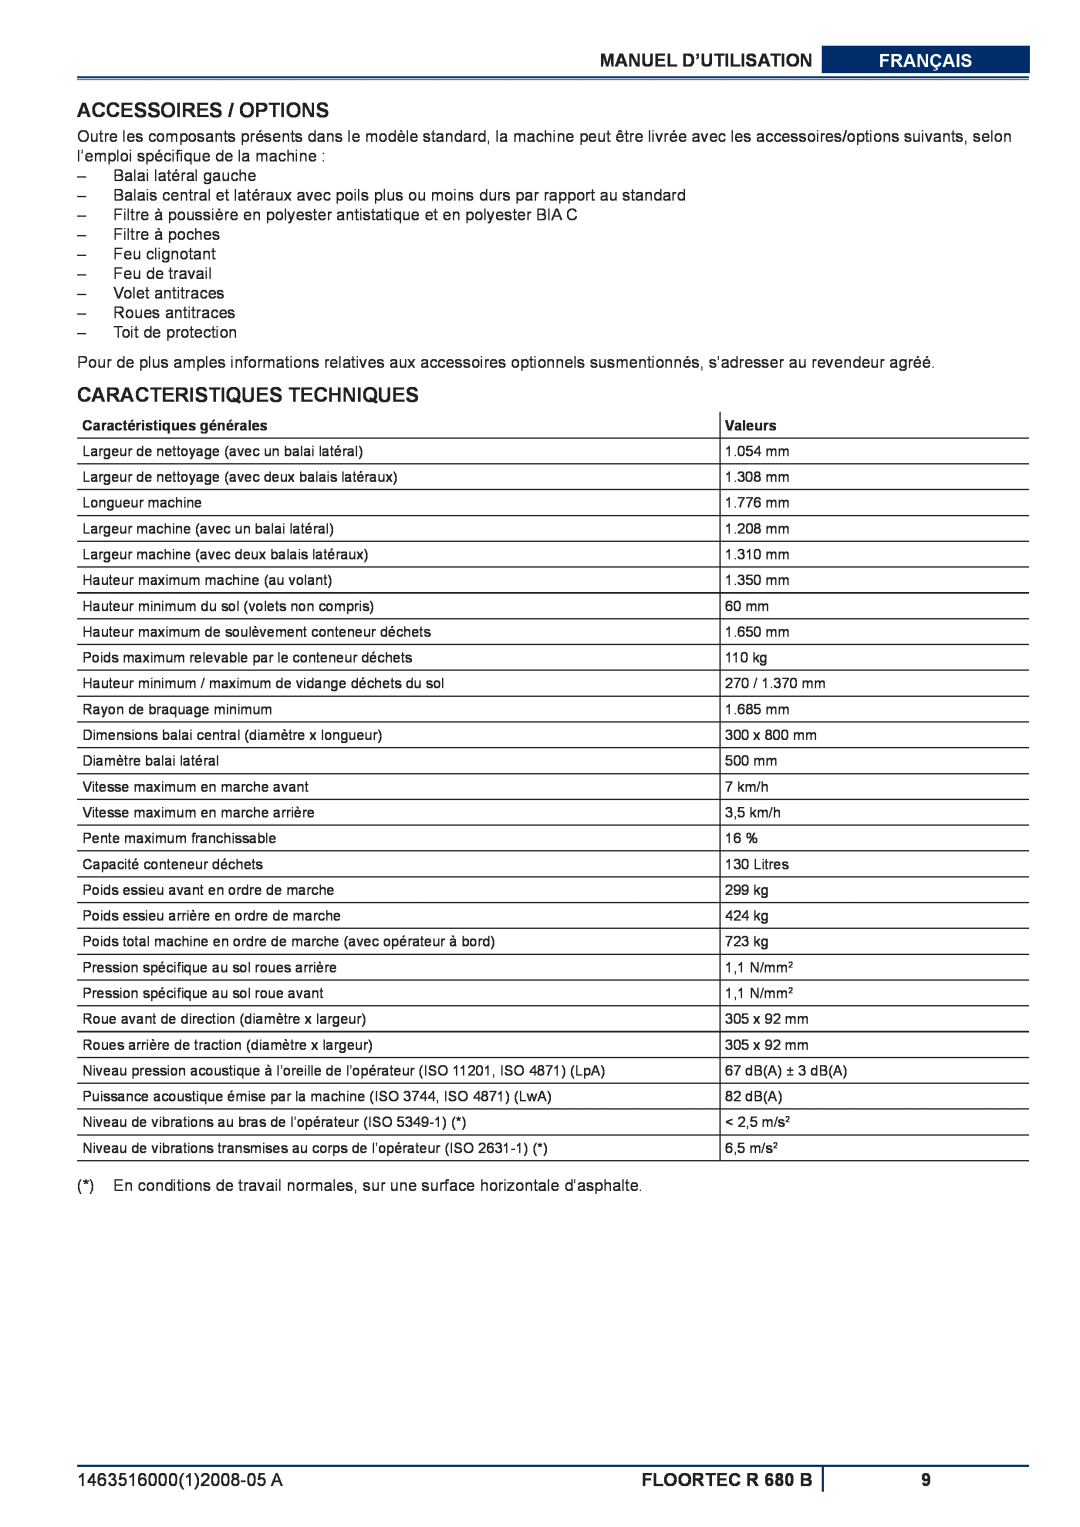 Nilfisk-ALTO Accessoires / Options, Caracteristiques Techniques, Manuel D’Utilisation, Français, FLOORTEC R 680 B 